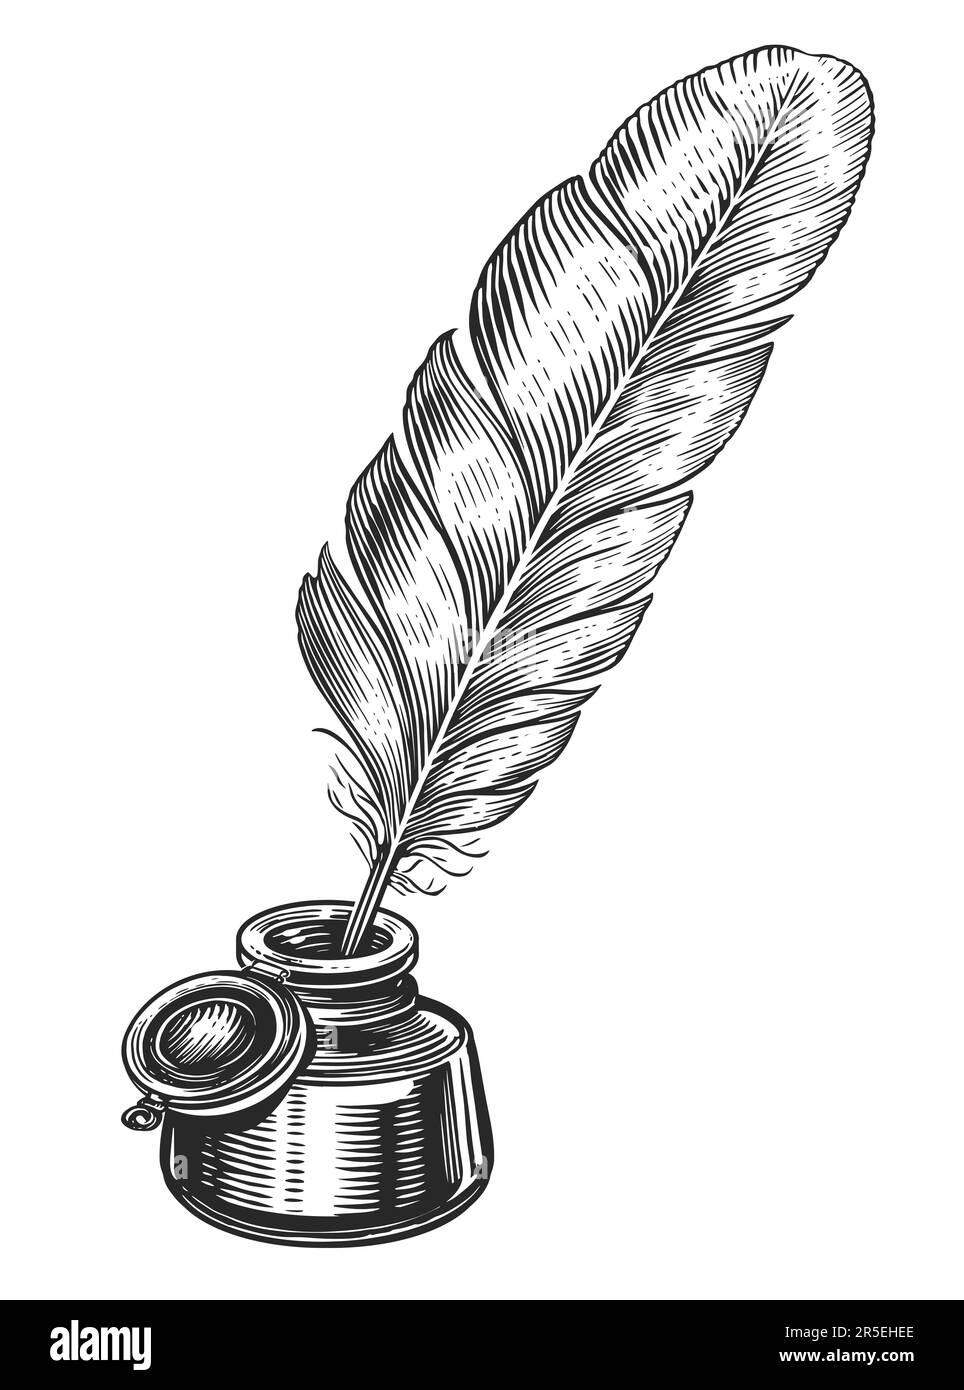 Penna di piuma in inkwell. Illustrazione di schizzo disegnata a mano in stile di incisione vintage Foto Stock